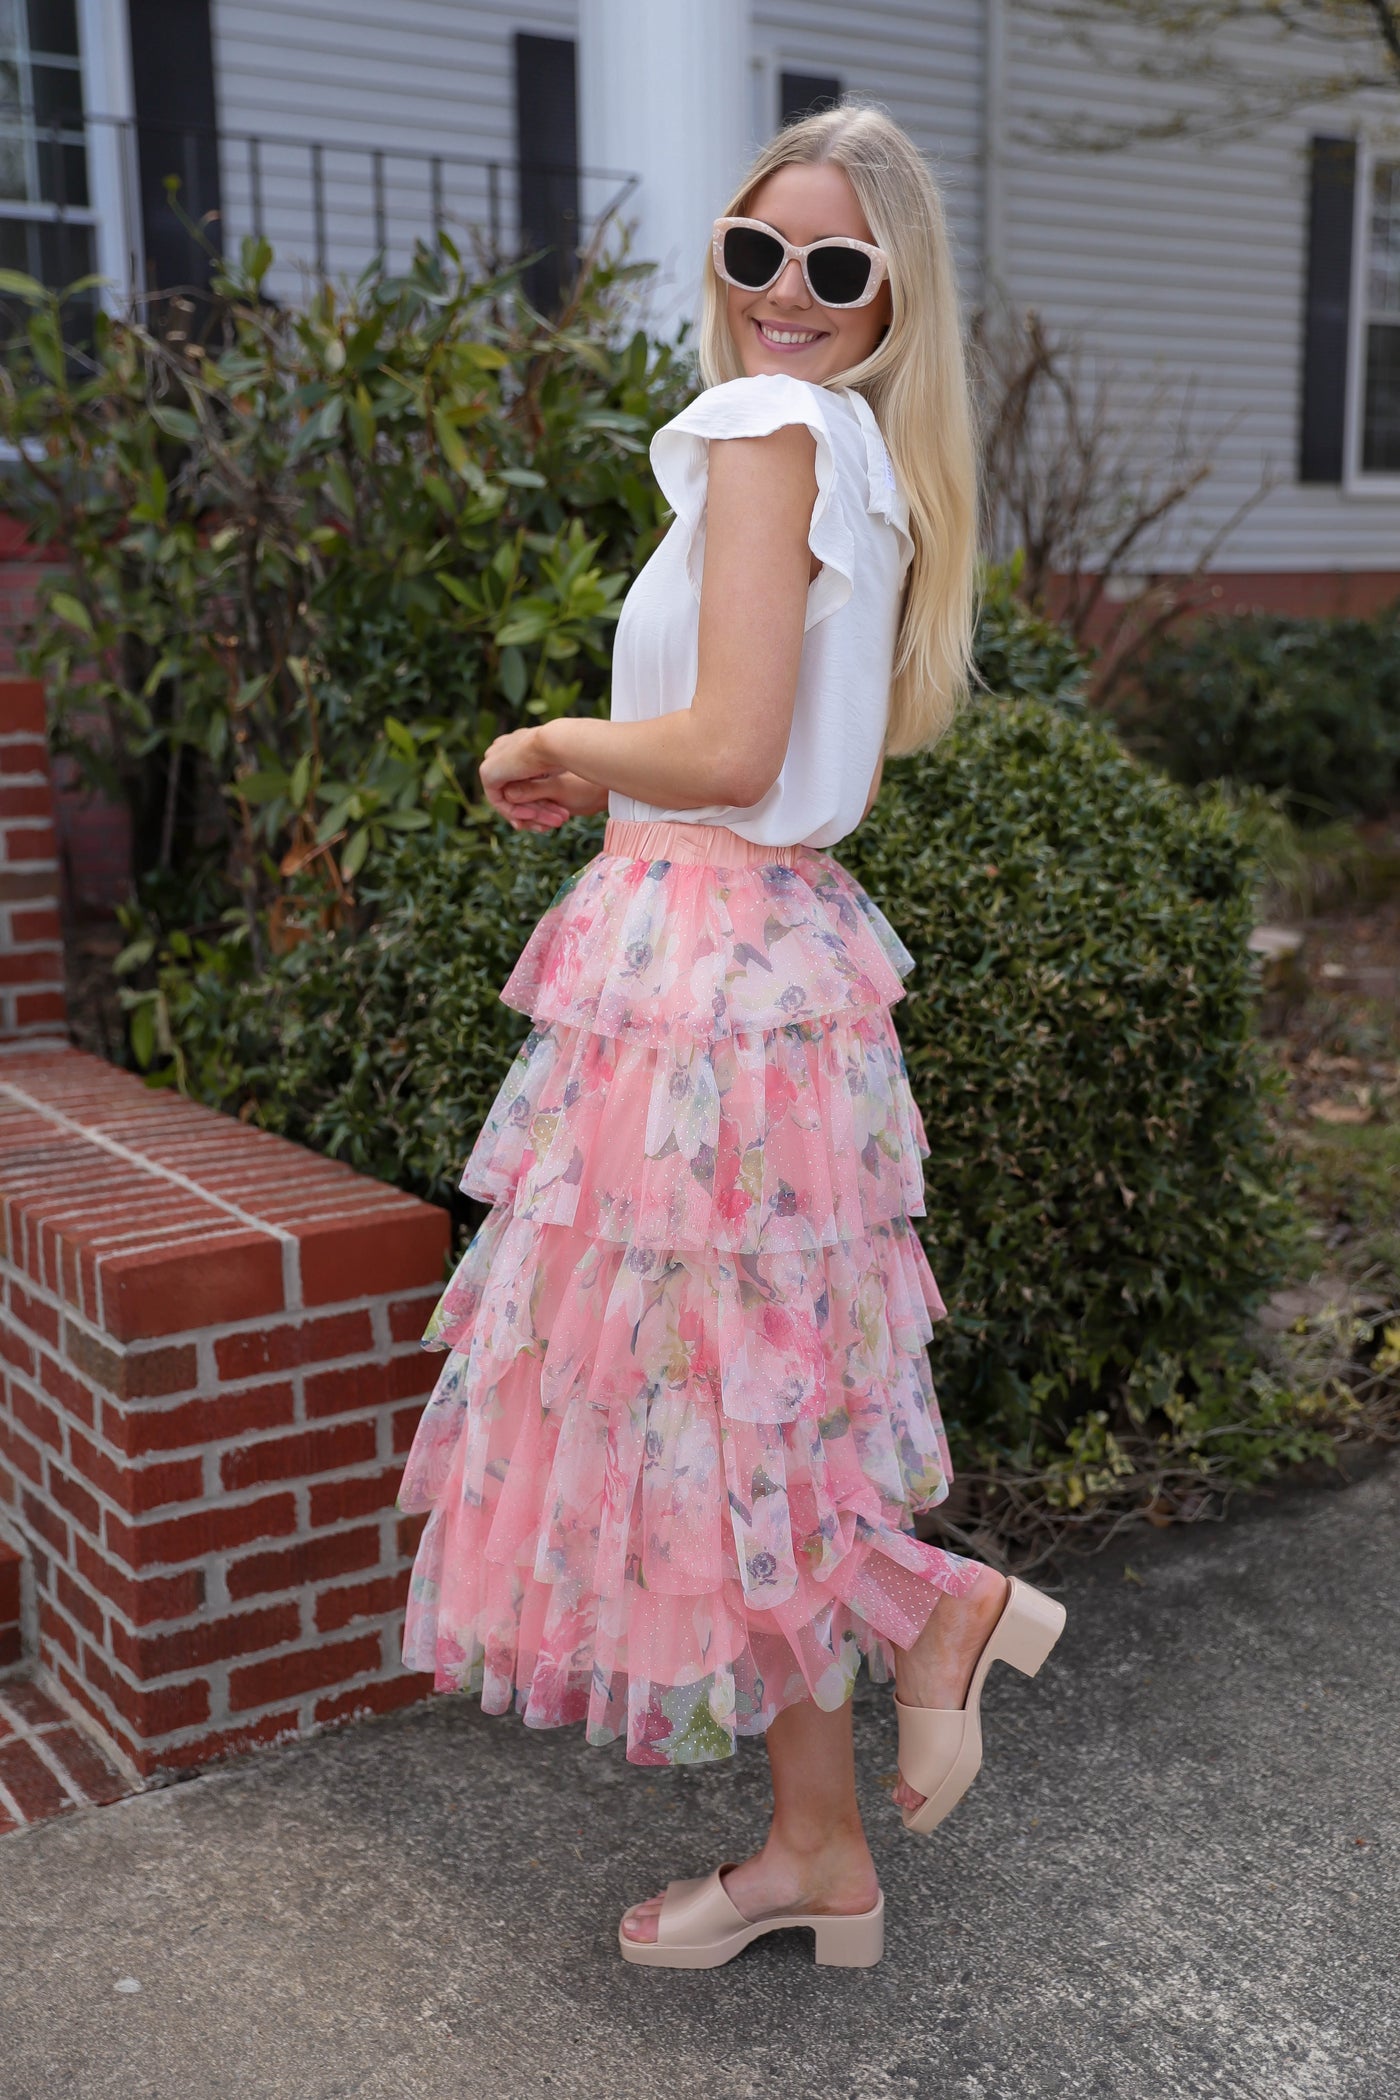 Ruffled Tulle Midi Skirt- Floral Print Midi Skirt- En Creme Pink Midi Skirt